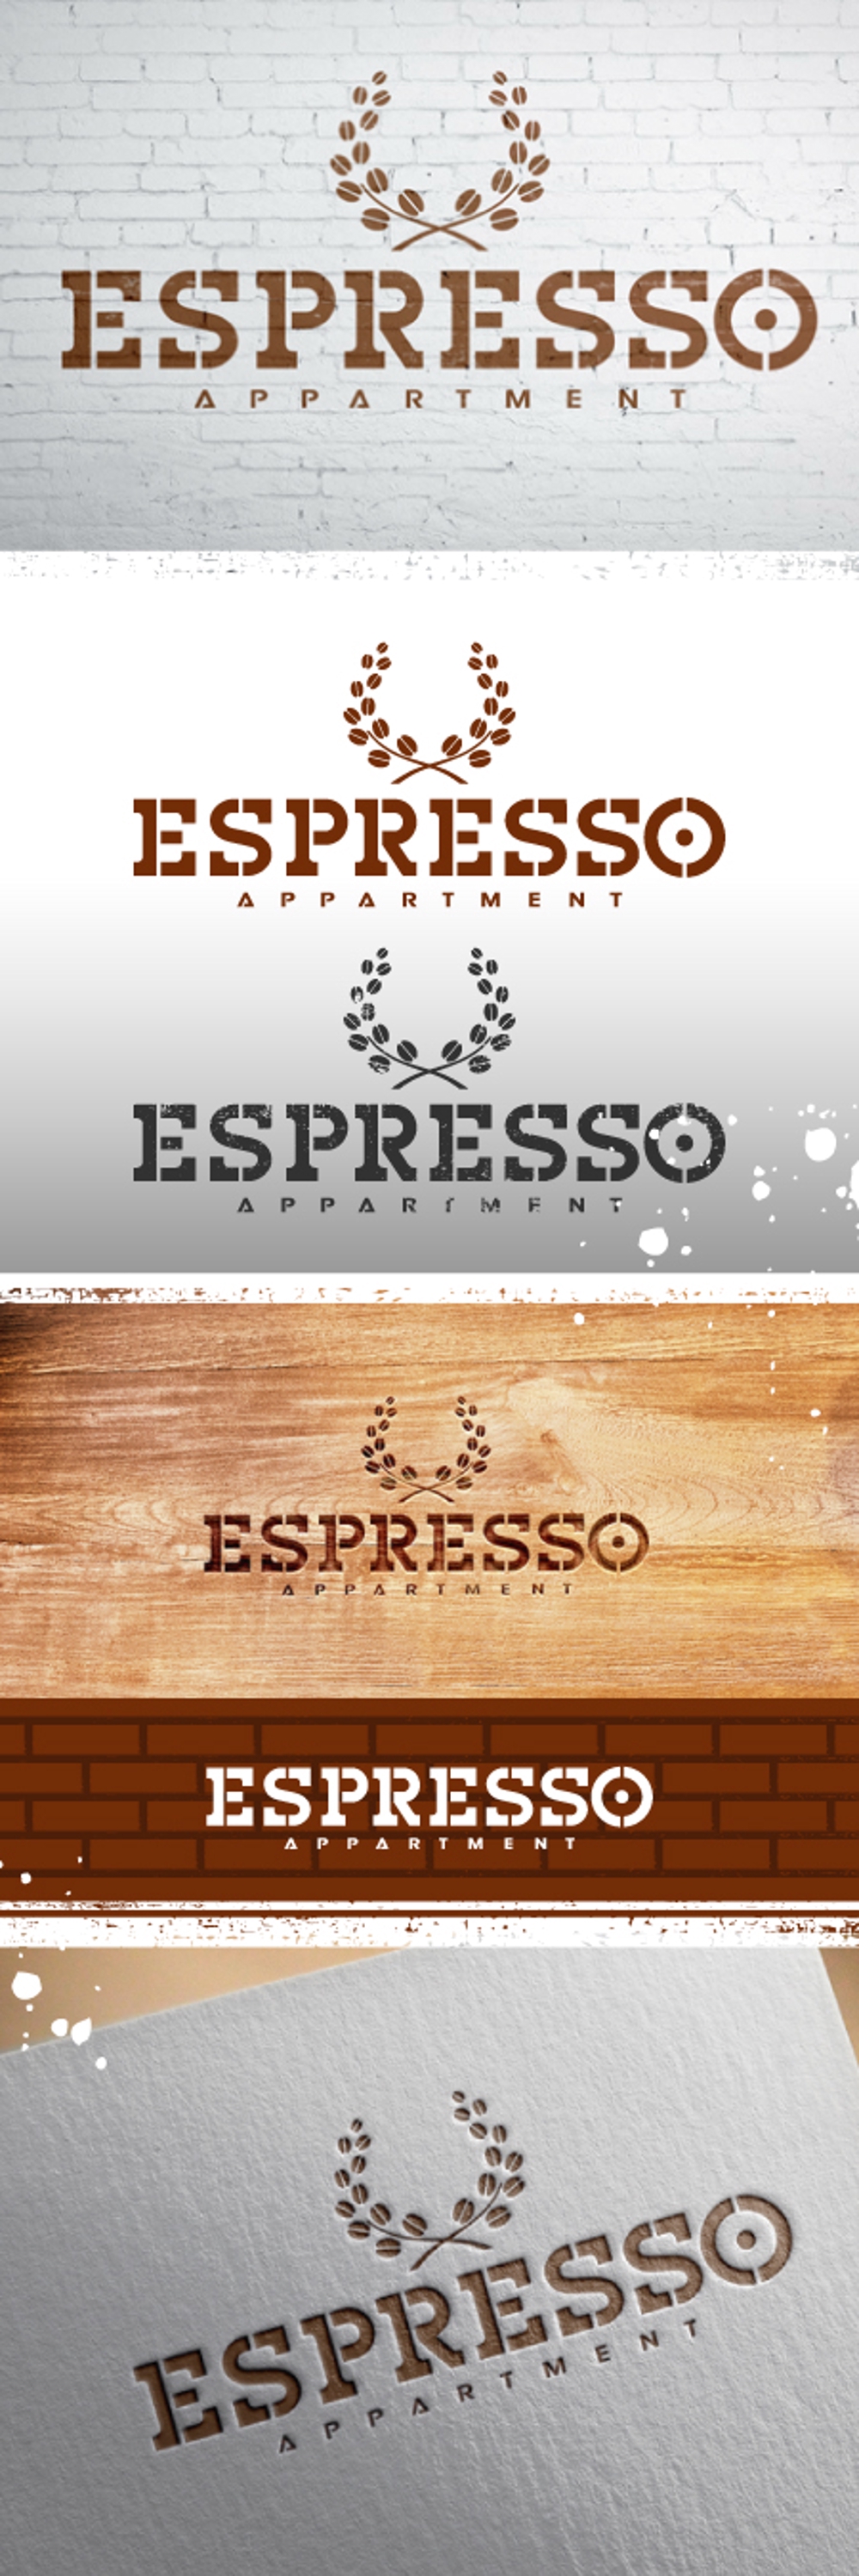 ブルックリンカフェ風アパートメント「ESPRESSO」のロゴ